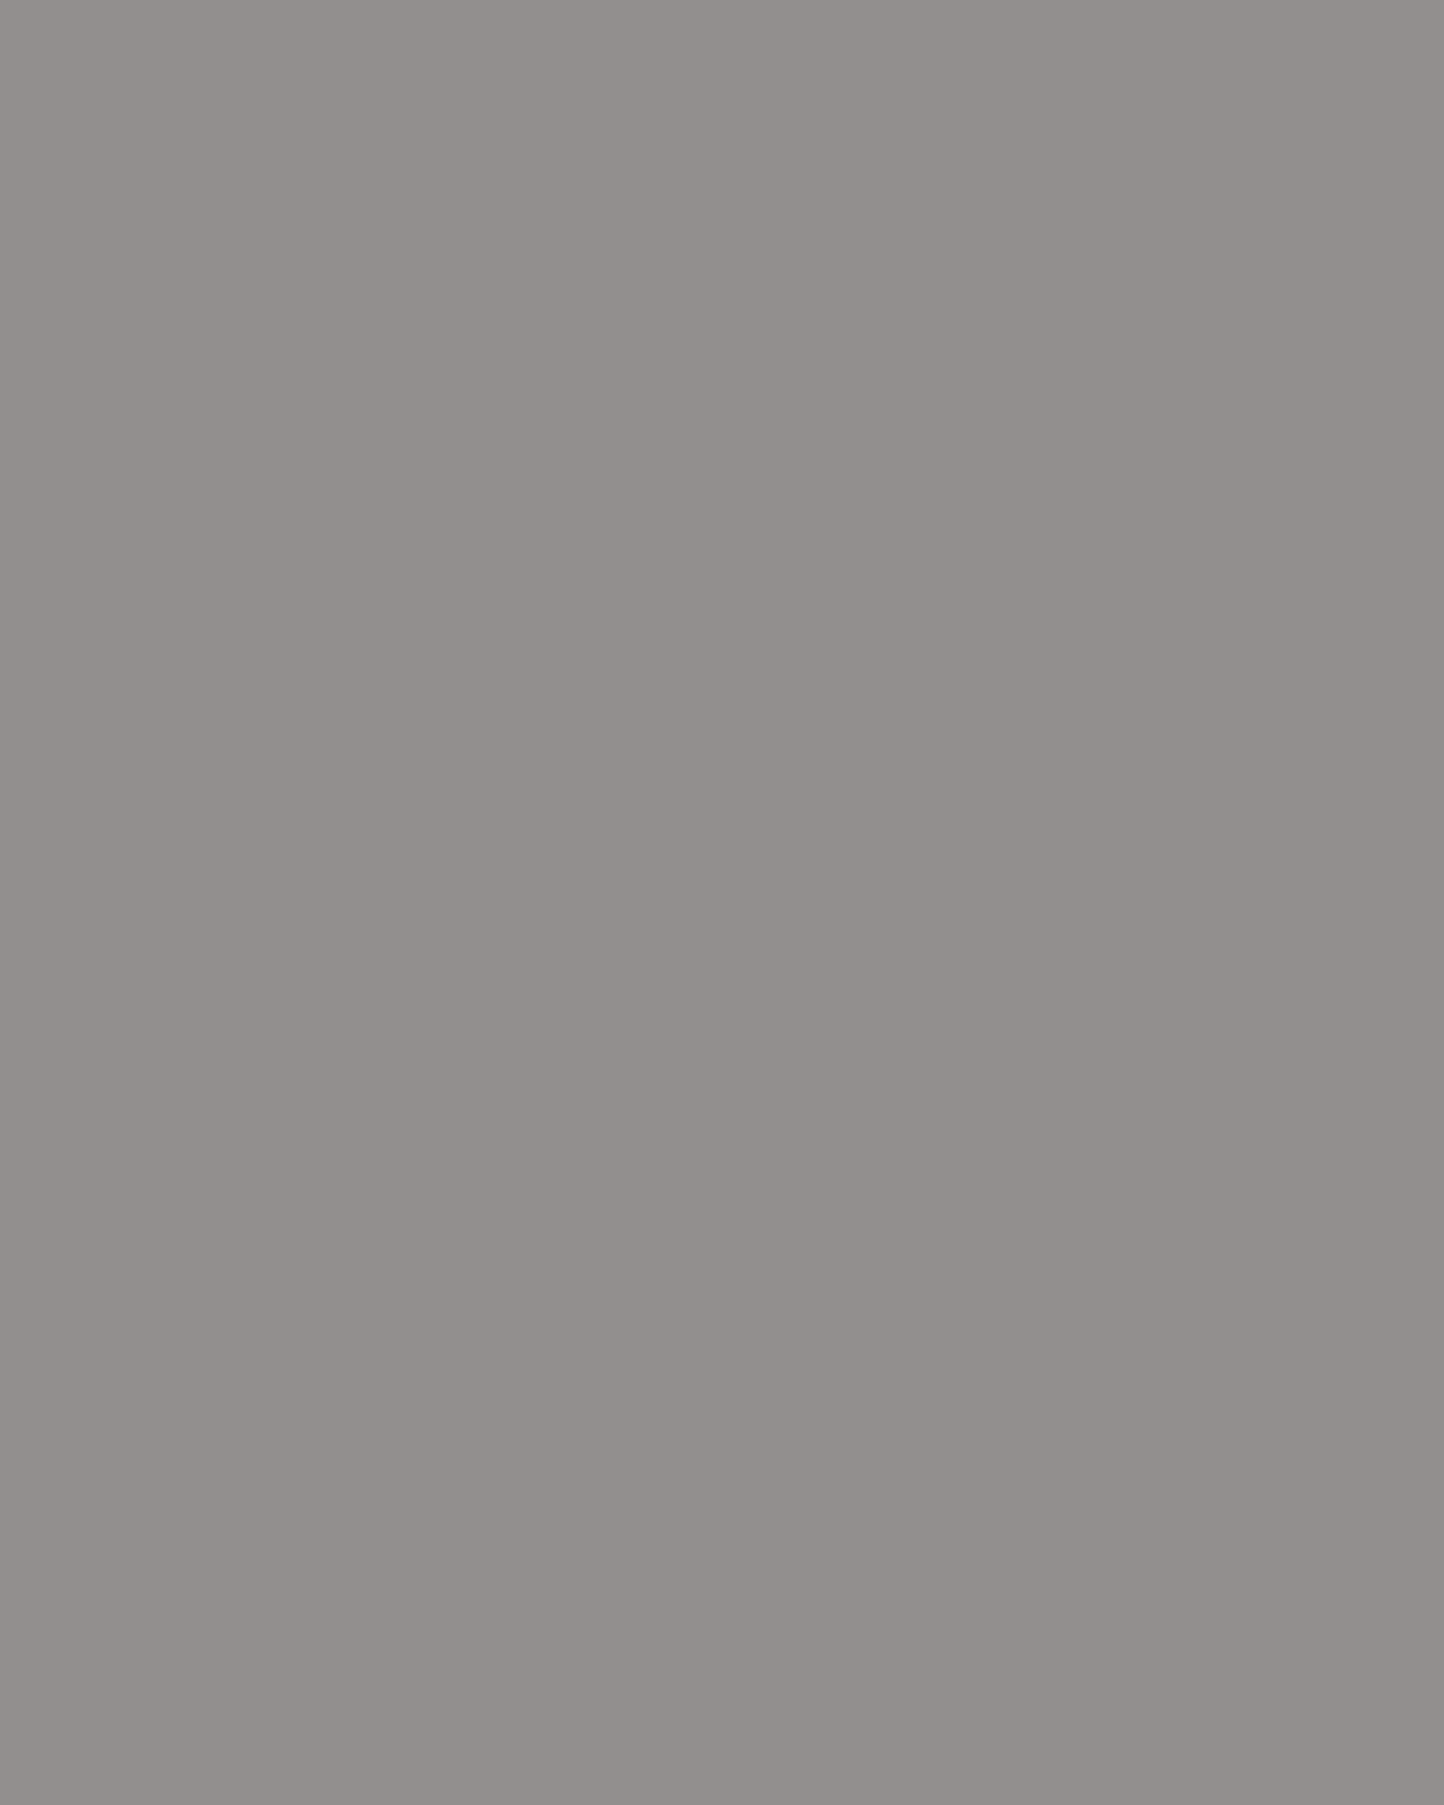 Платье императрицы Марии Федоровны. 1880-е годы. Государственный Эрмитаж, Санкт-Петербург